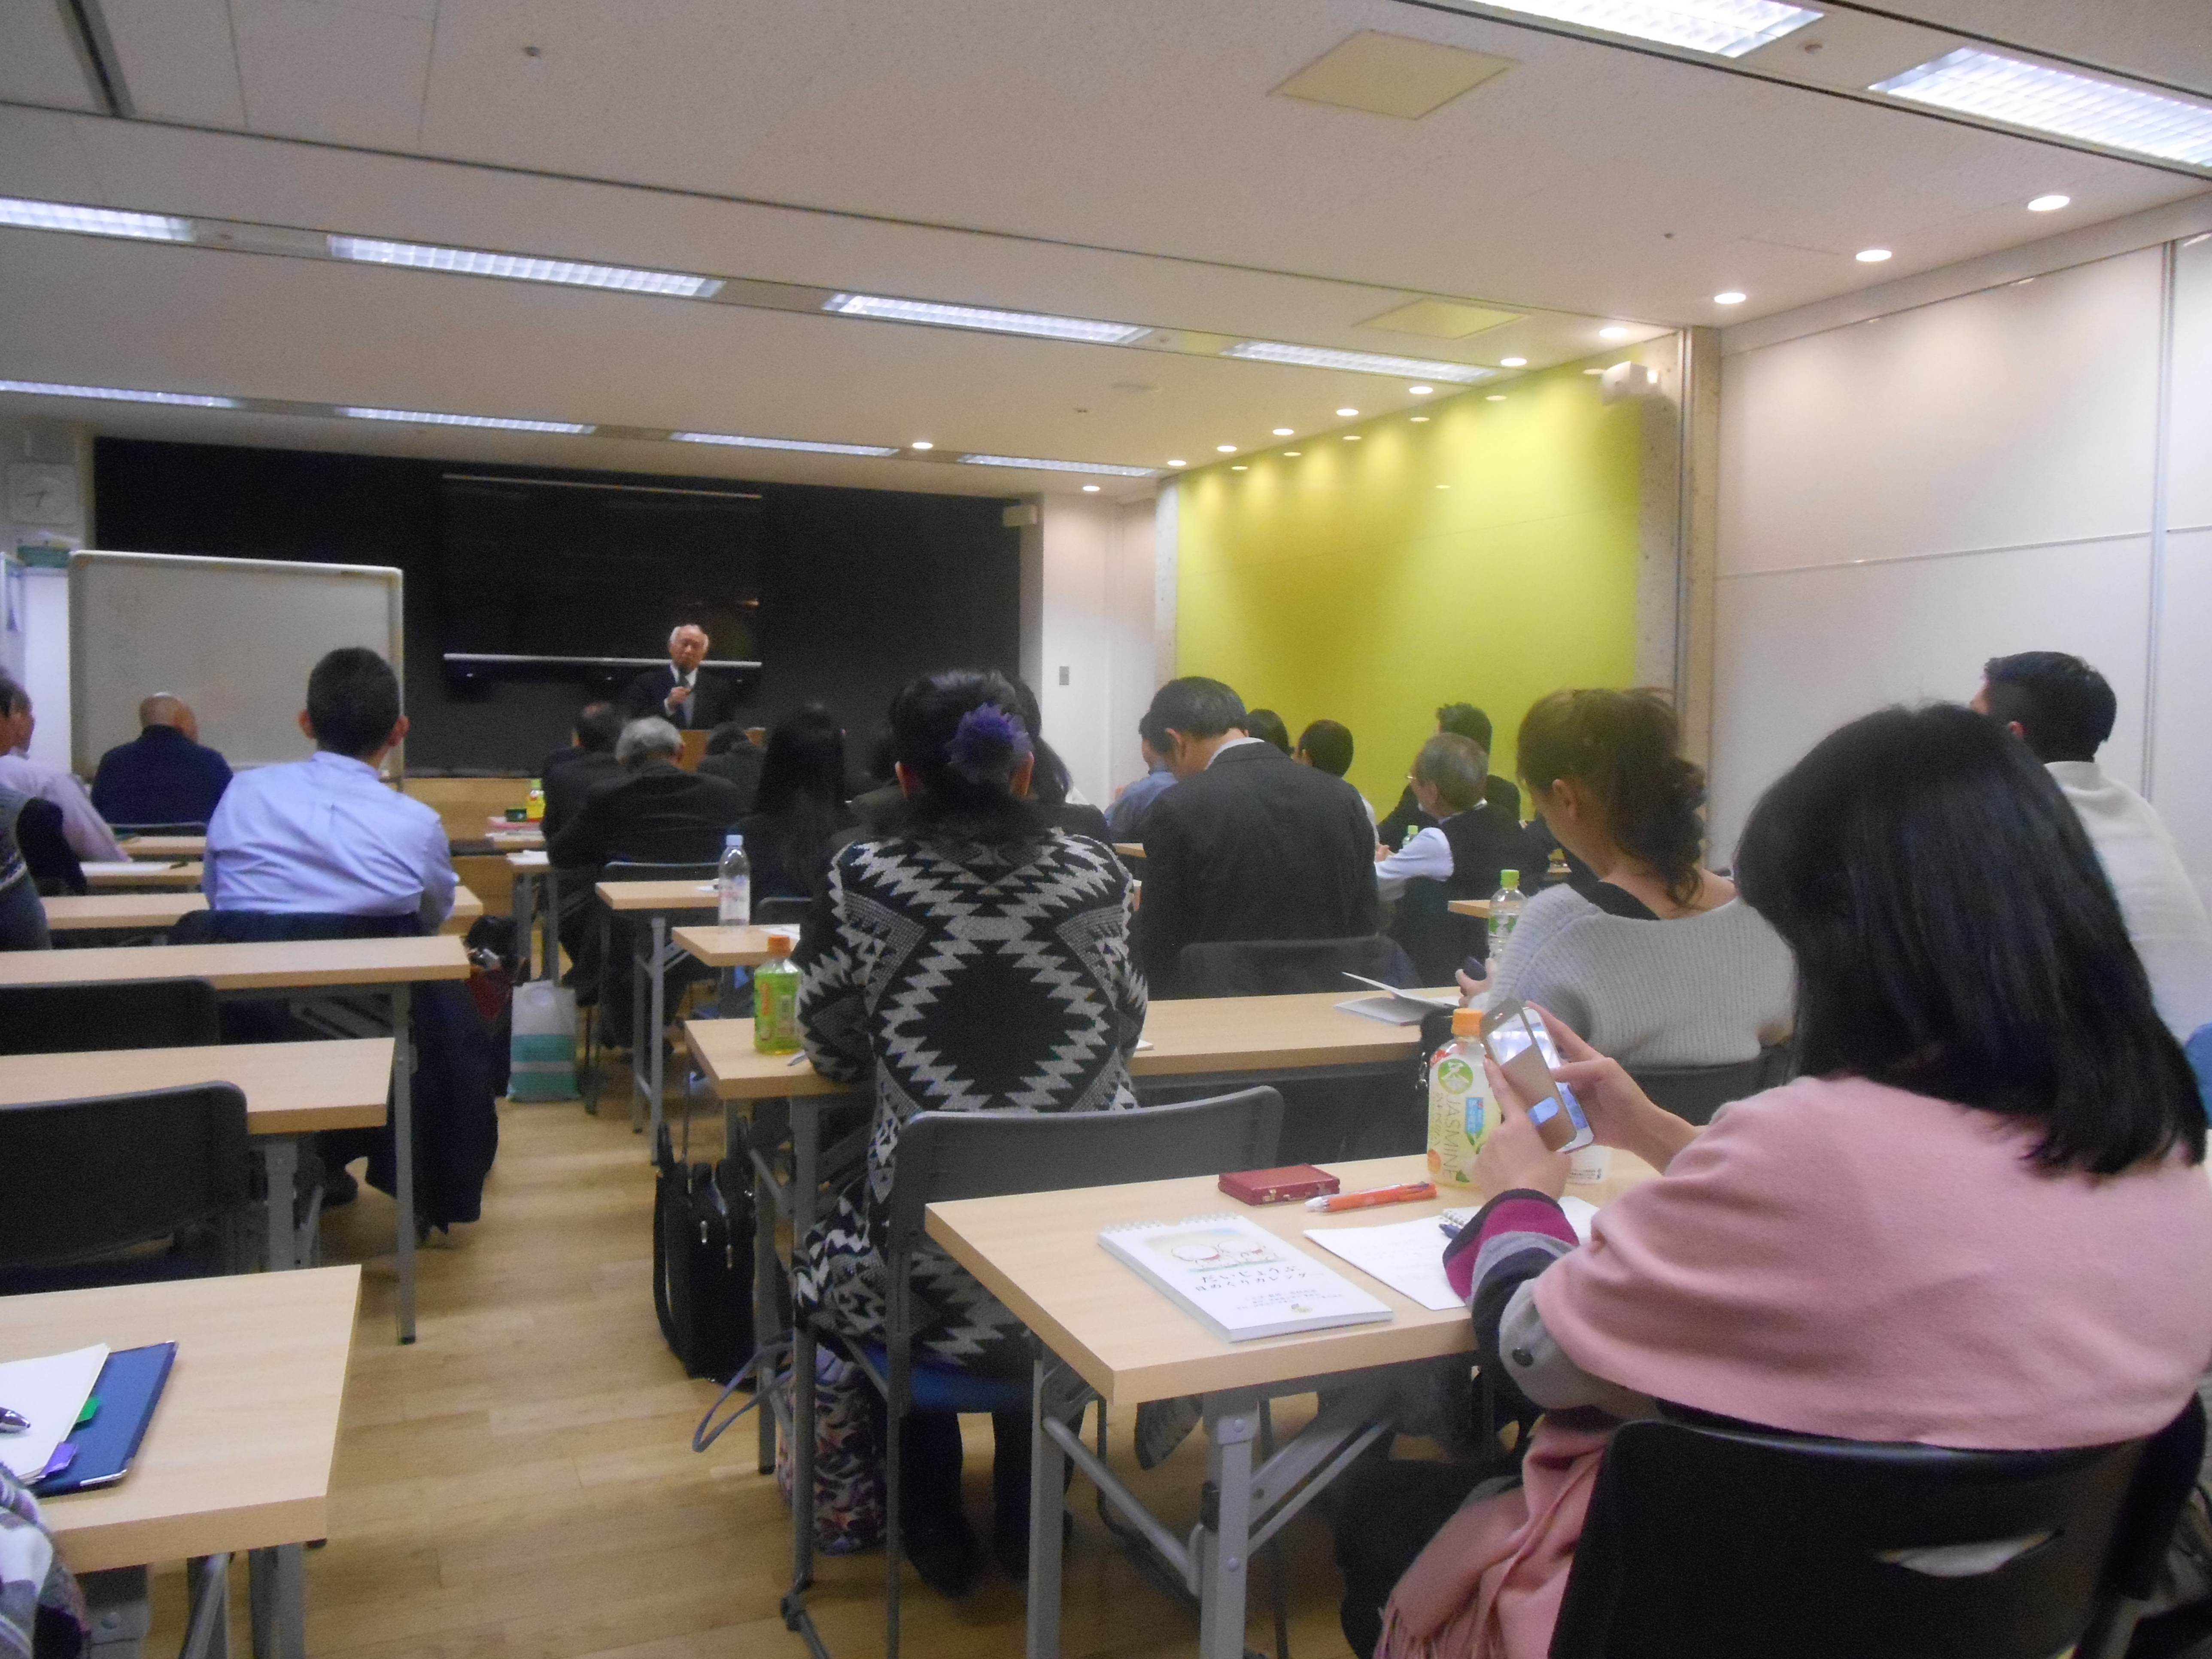 DSCN0065 - 平成29年度 東京思風塾2月4日開催しました。